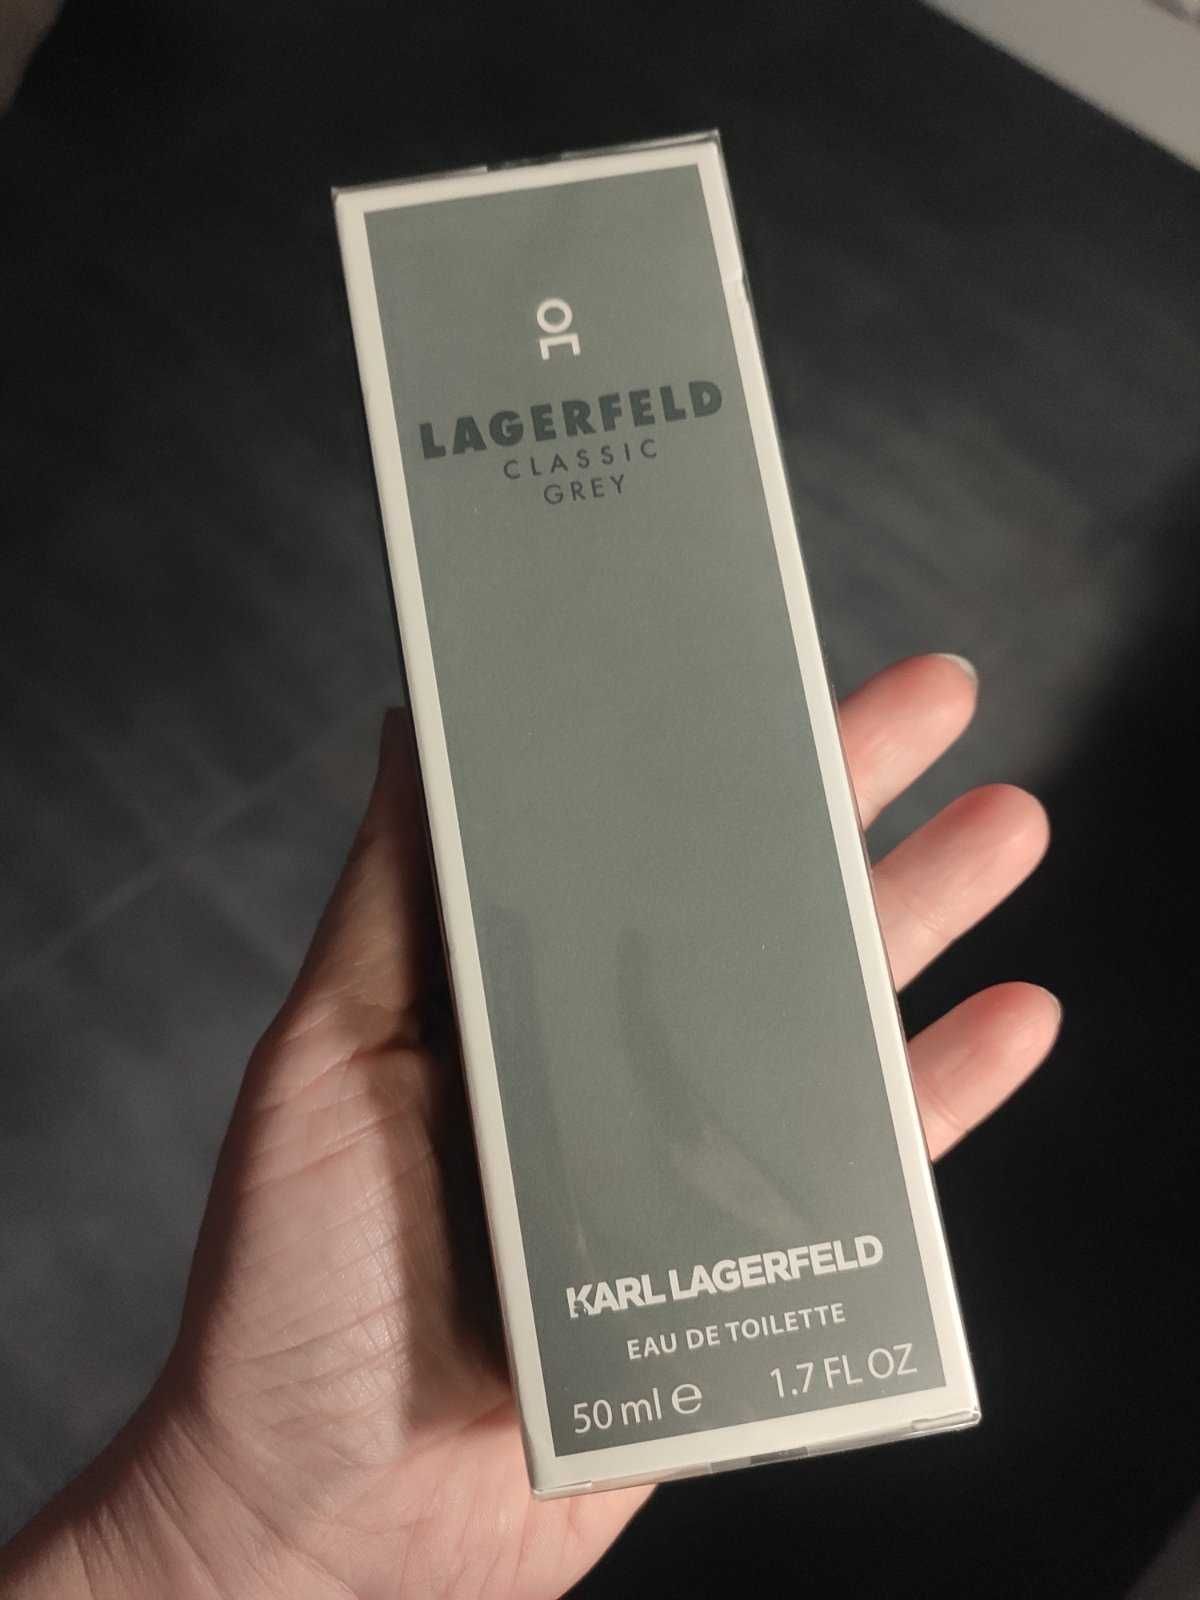 Karl Lagerfeld Grey парфюм чоловічий 50мл, подарунок військовому